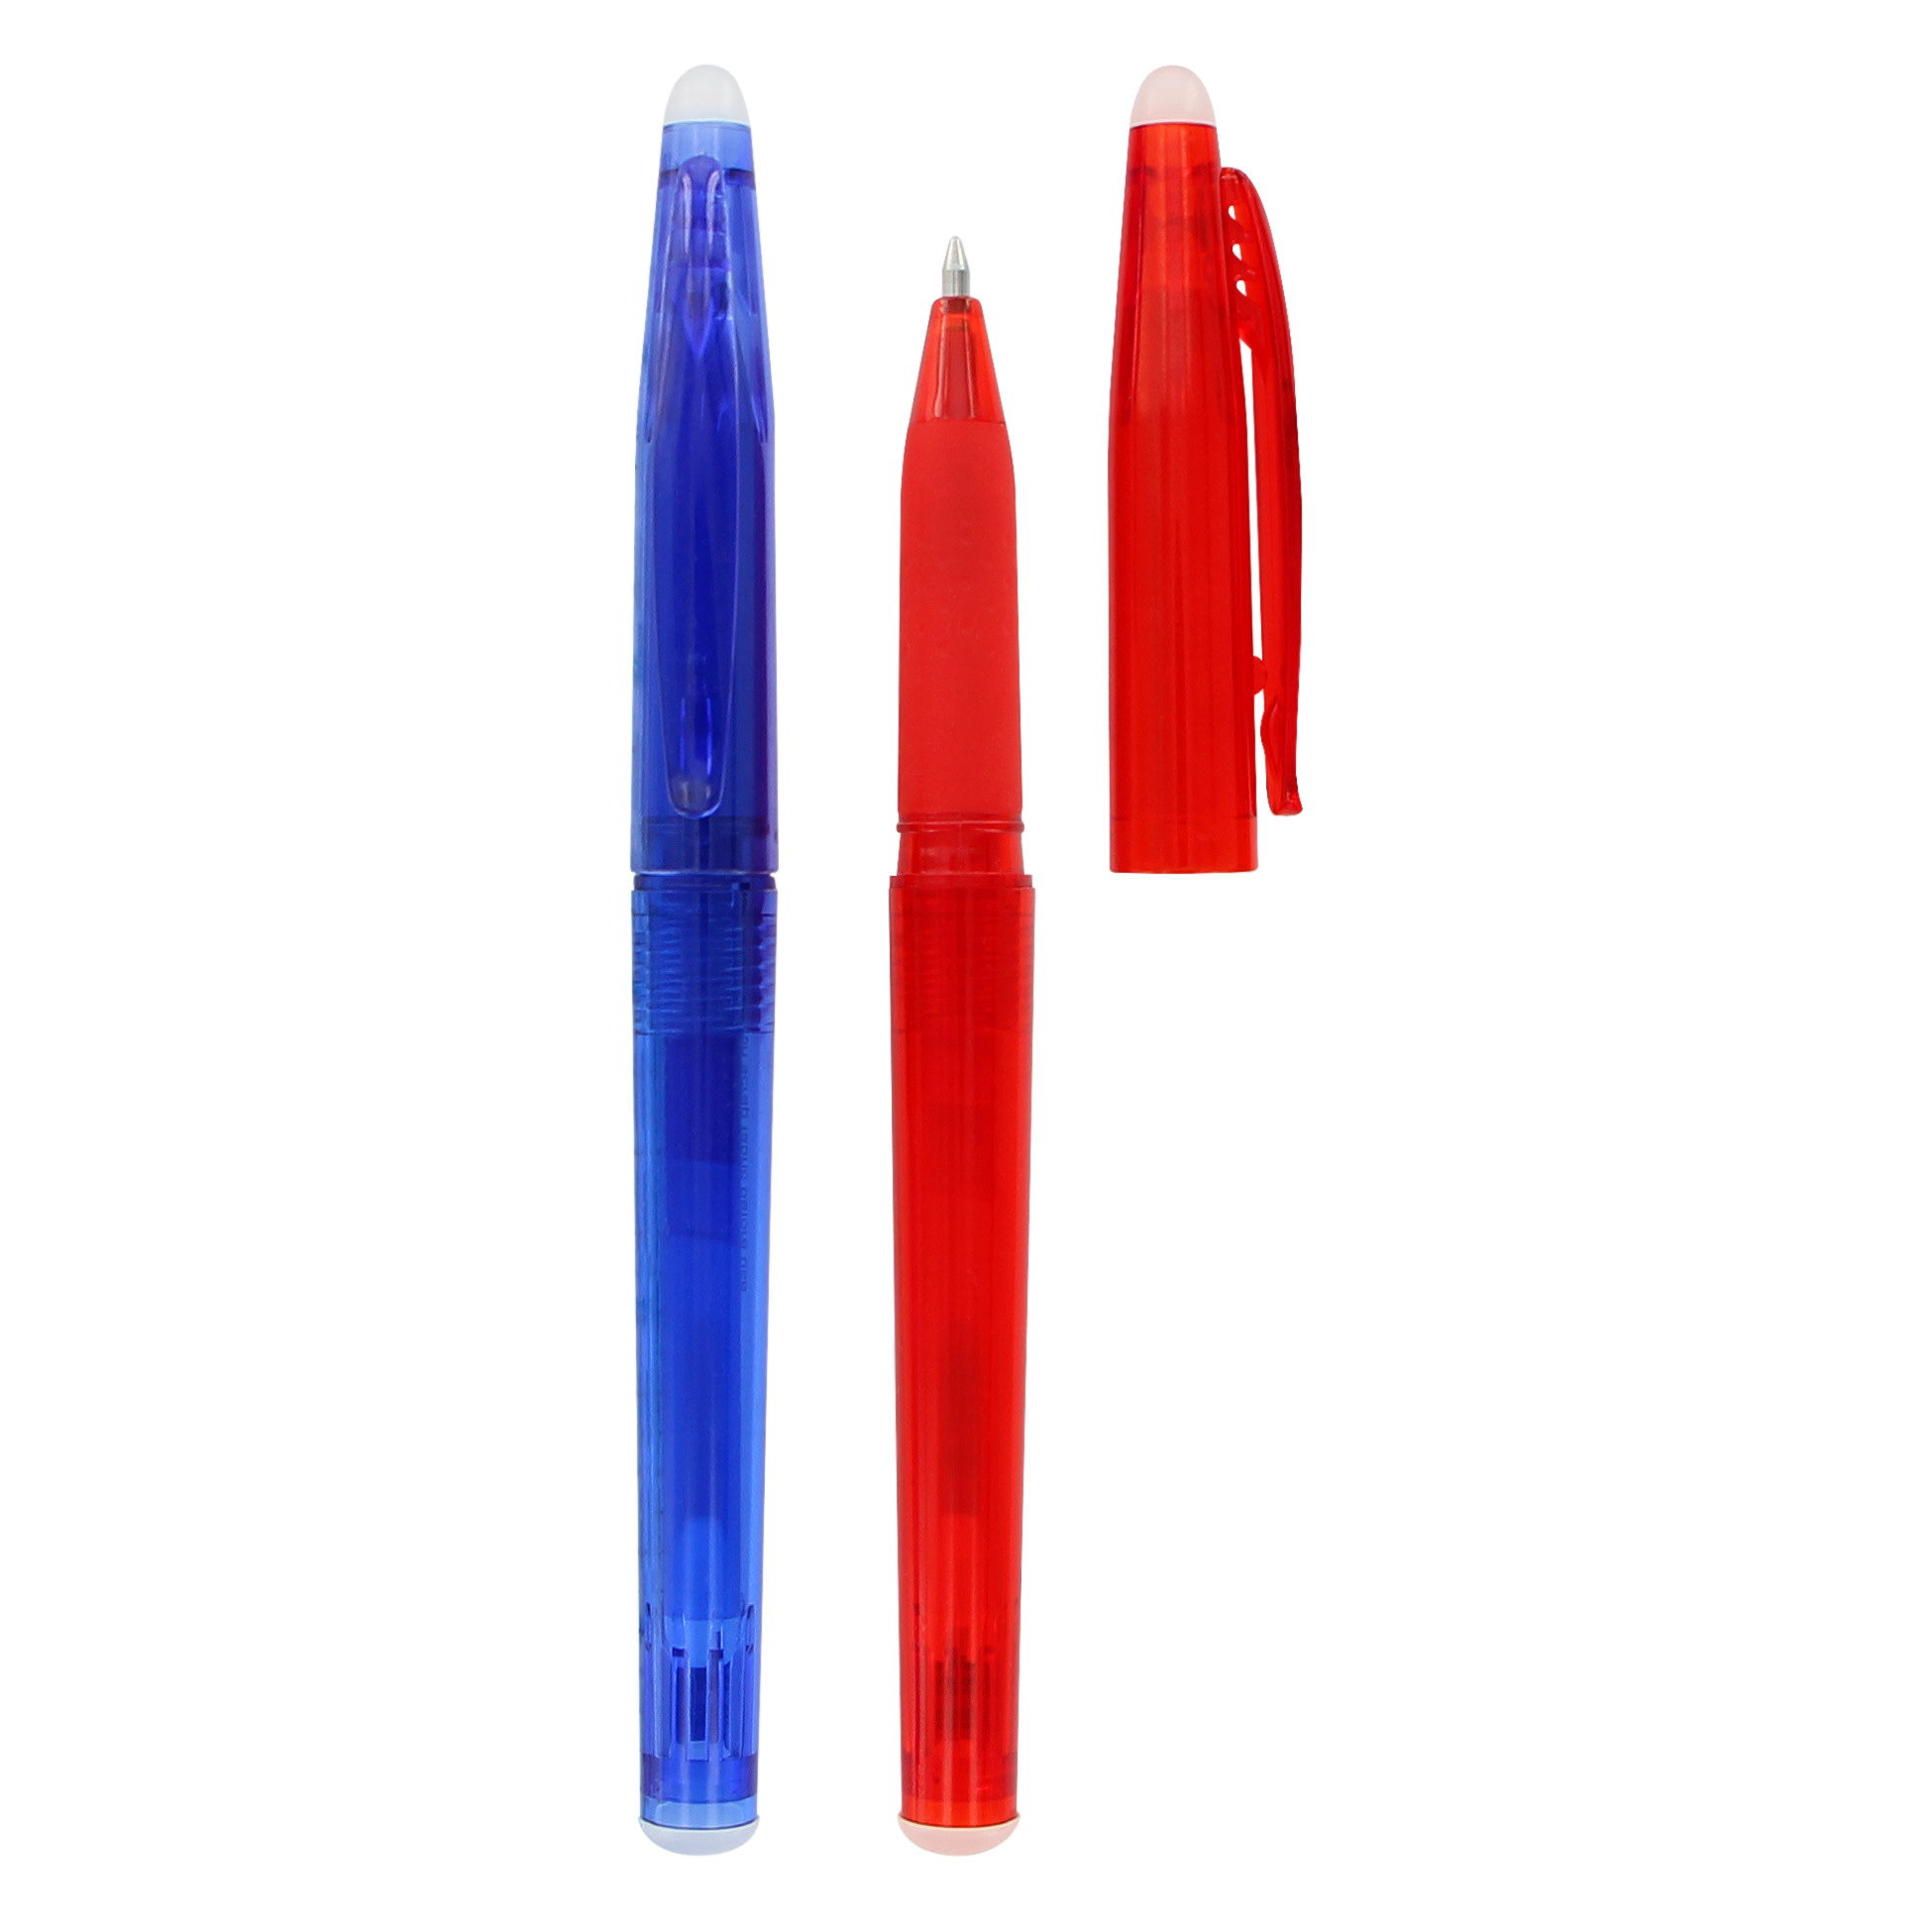 Unique Unique sewing erasable fabric pens - blue & red - 2 pcs